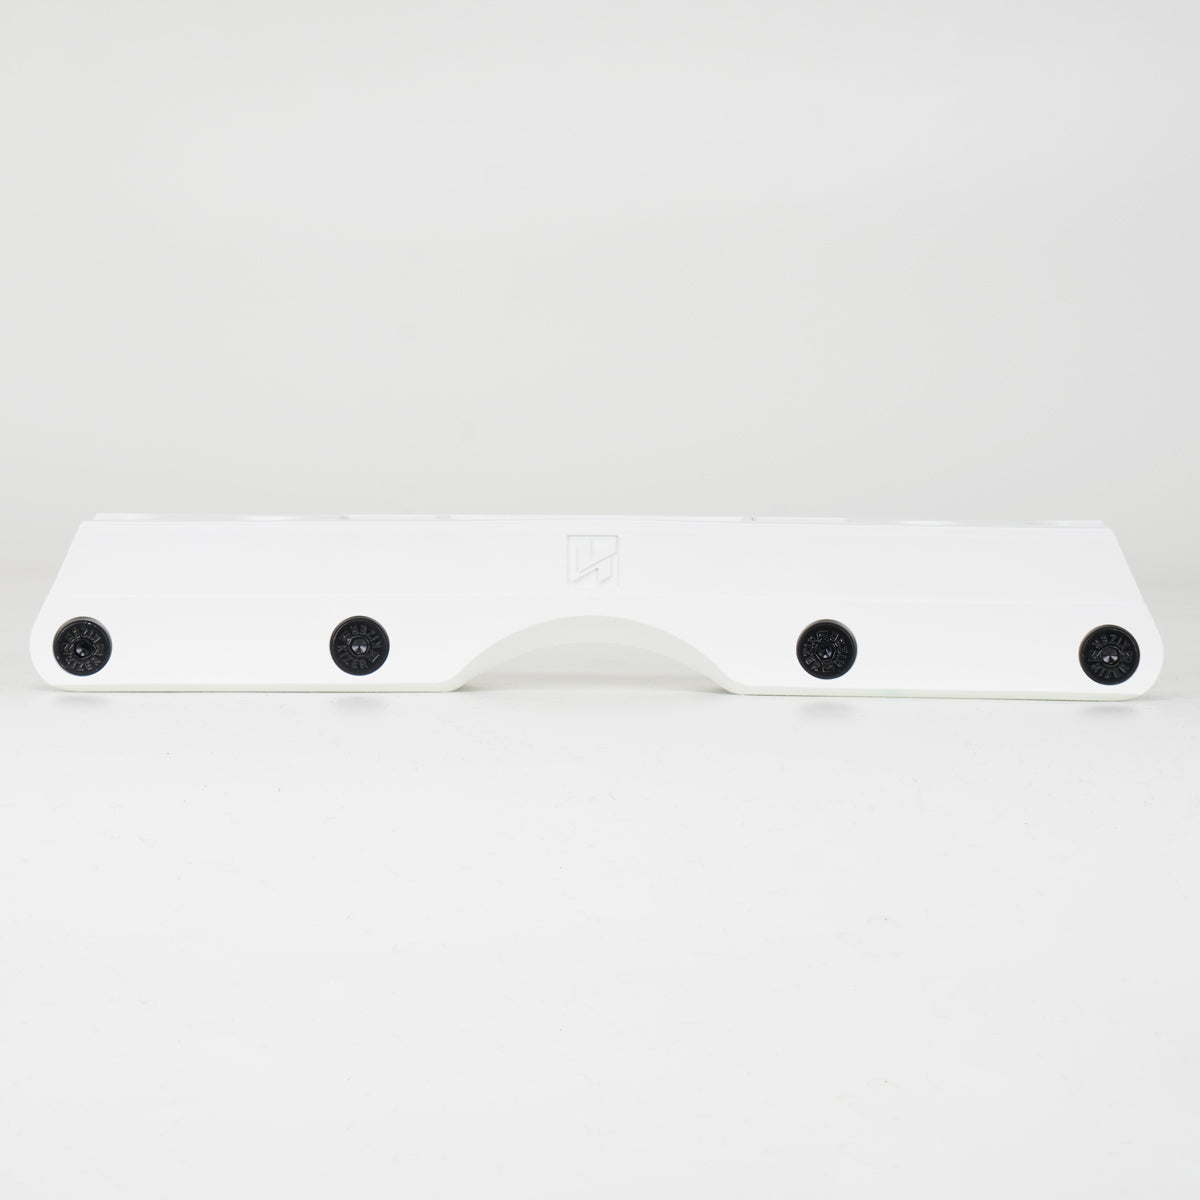 Kizer Fluid 4 Antirocker Frames - White